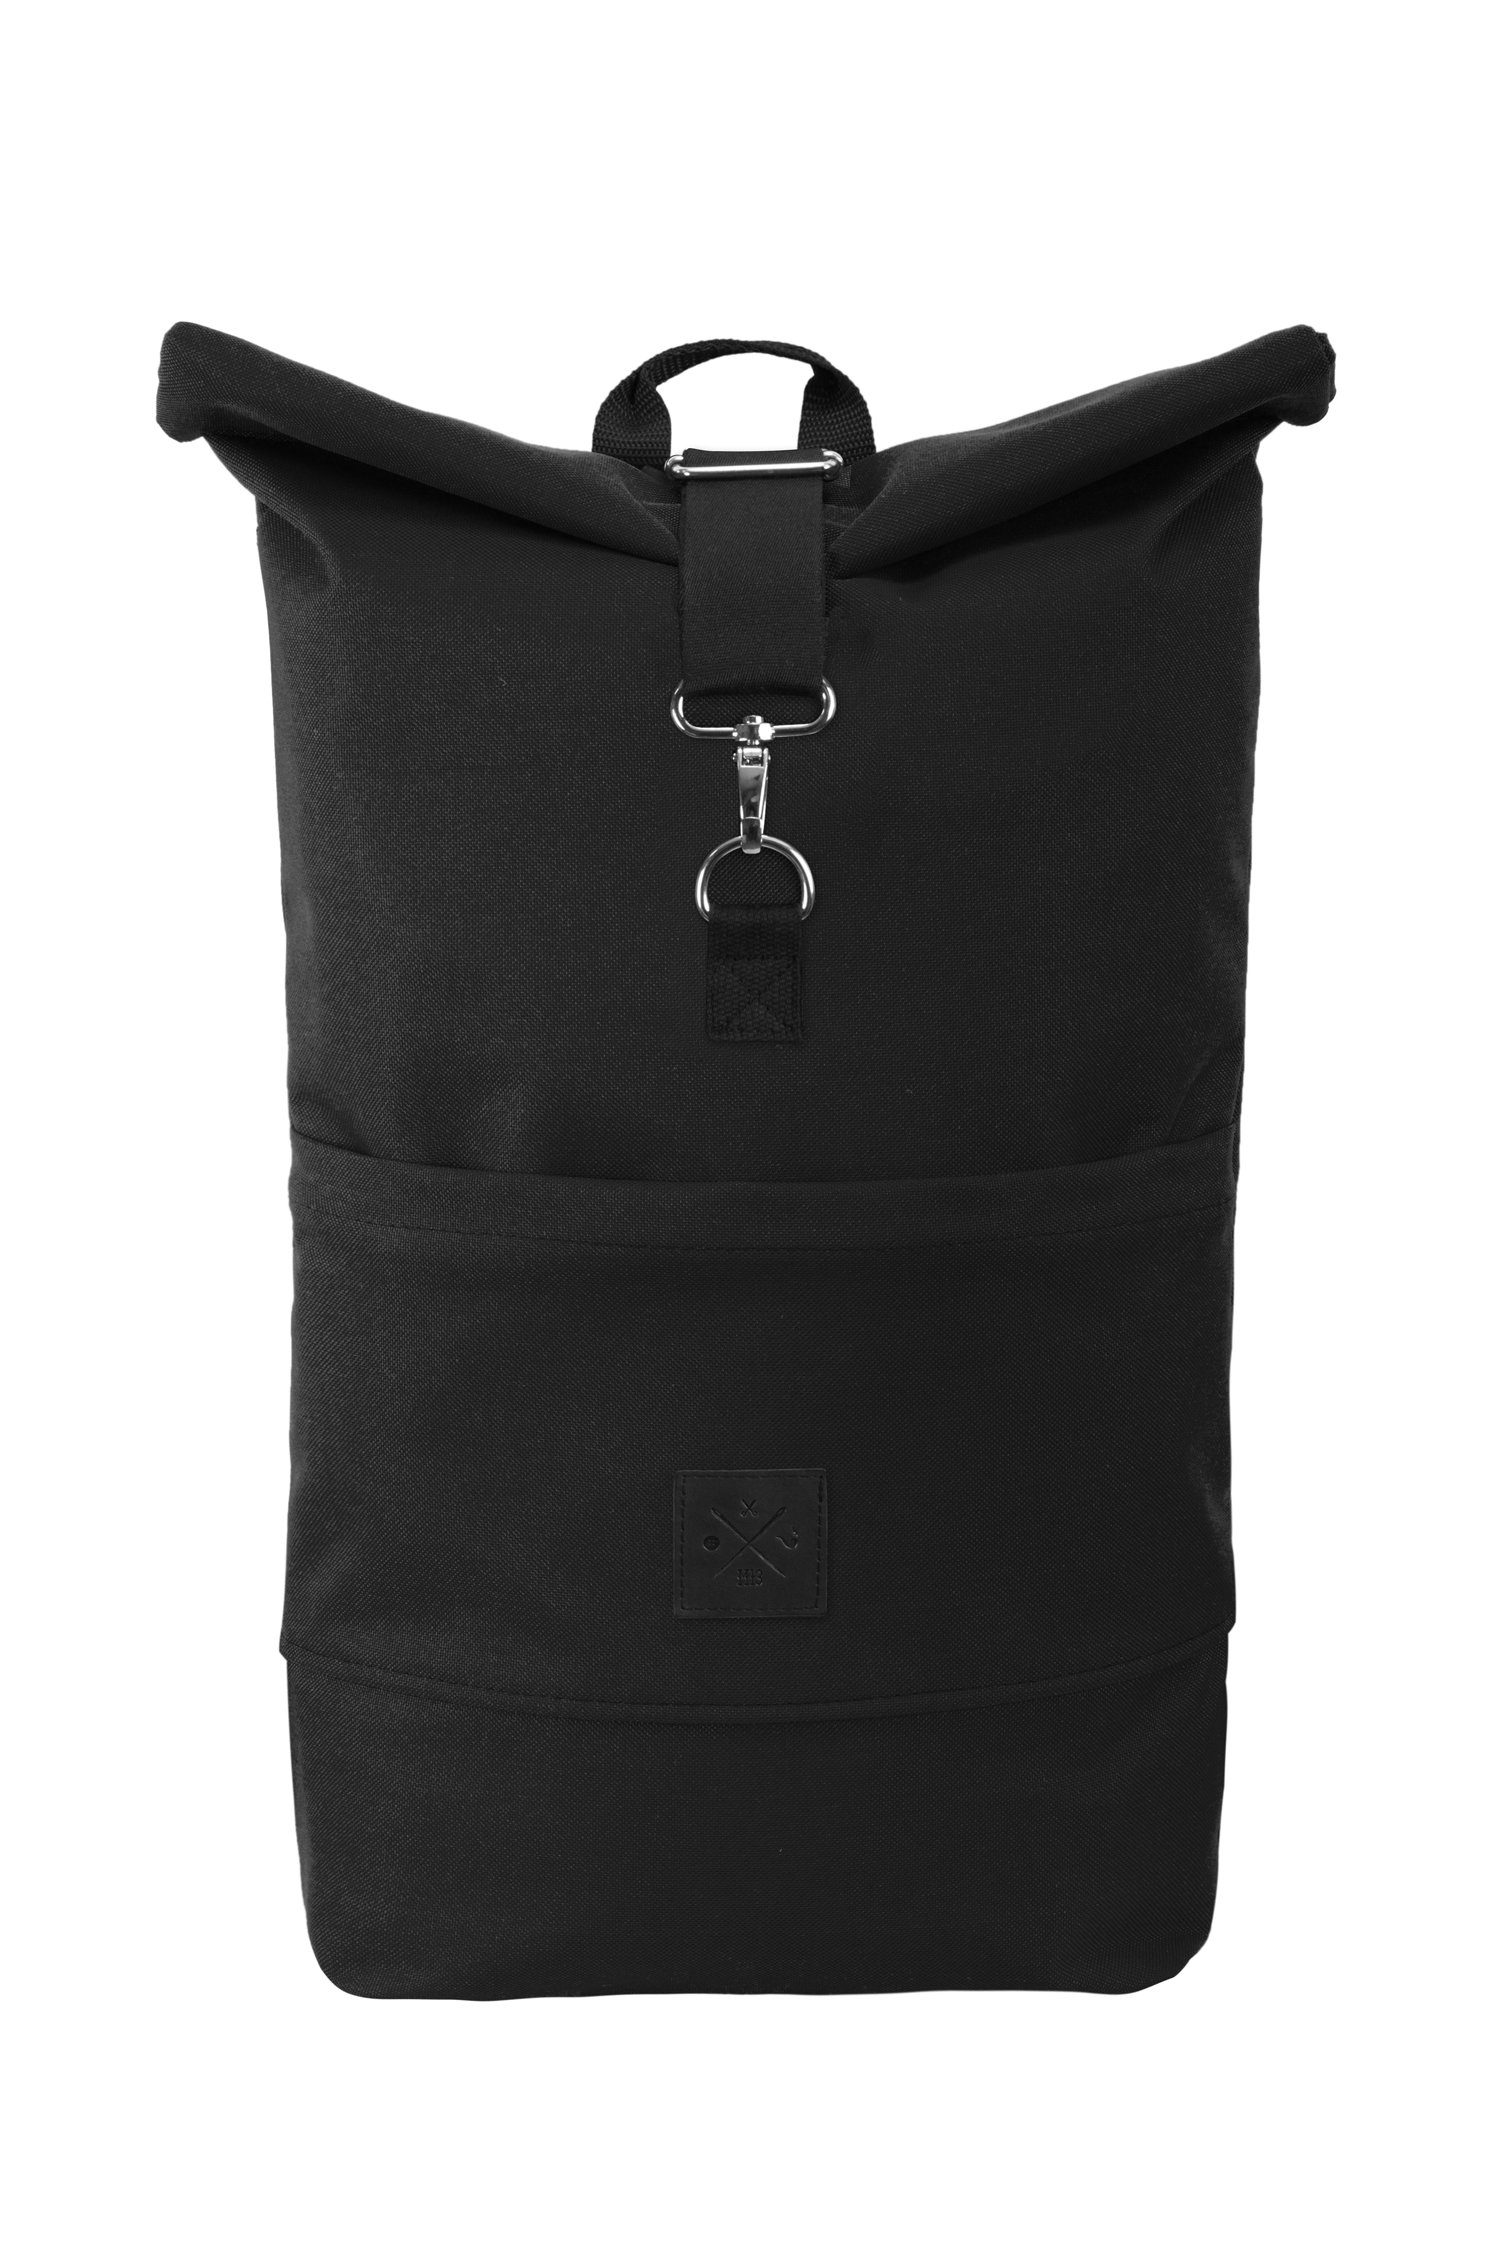 Manufaktur13 Tagesrucksack Roll-Top Backpack - Rucksack mit Rollverschluss, wasserdicht/wasserabweisend, verstellbare Gurte Black Out